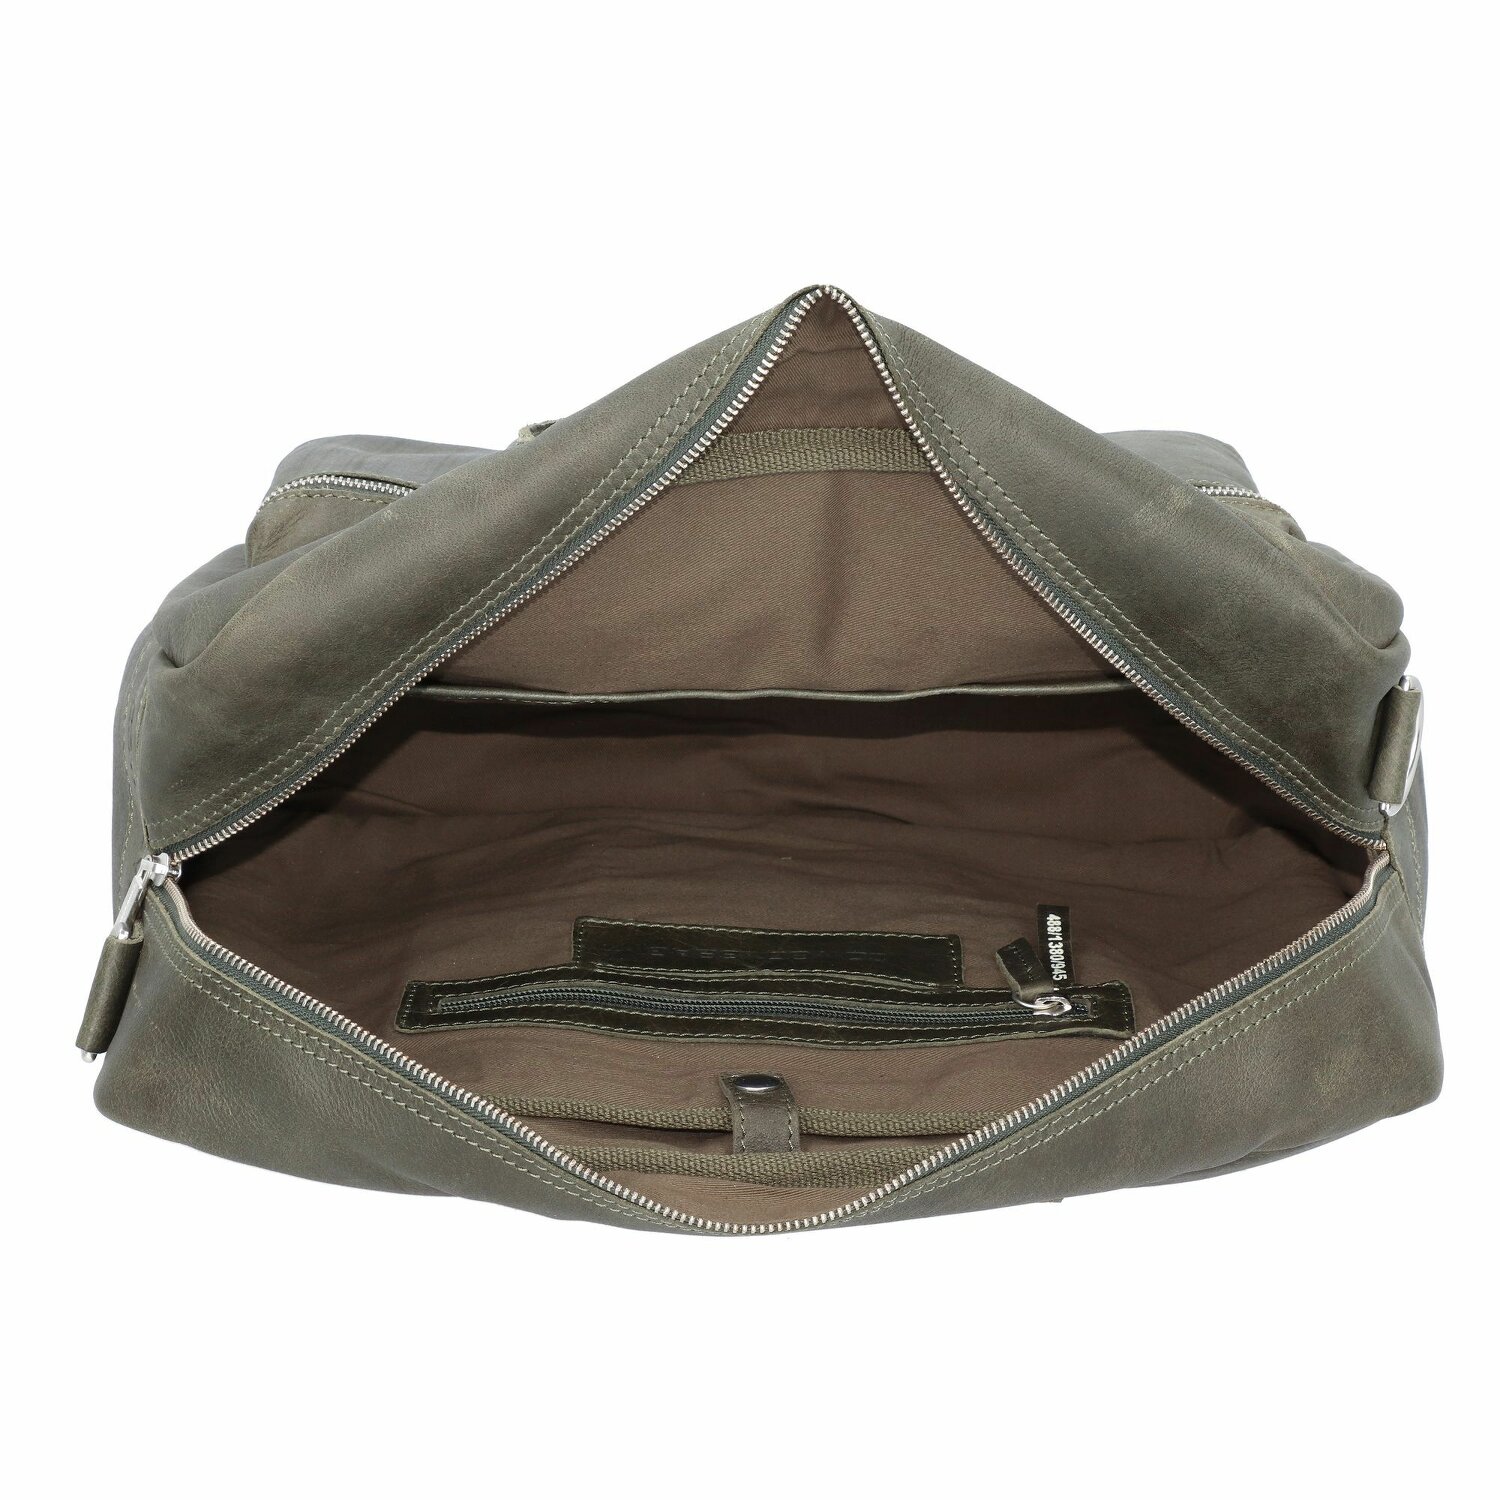 El maletín universitario de cuero con compartimento para el portátil de 42 cm dark